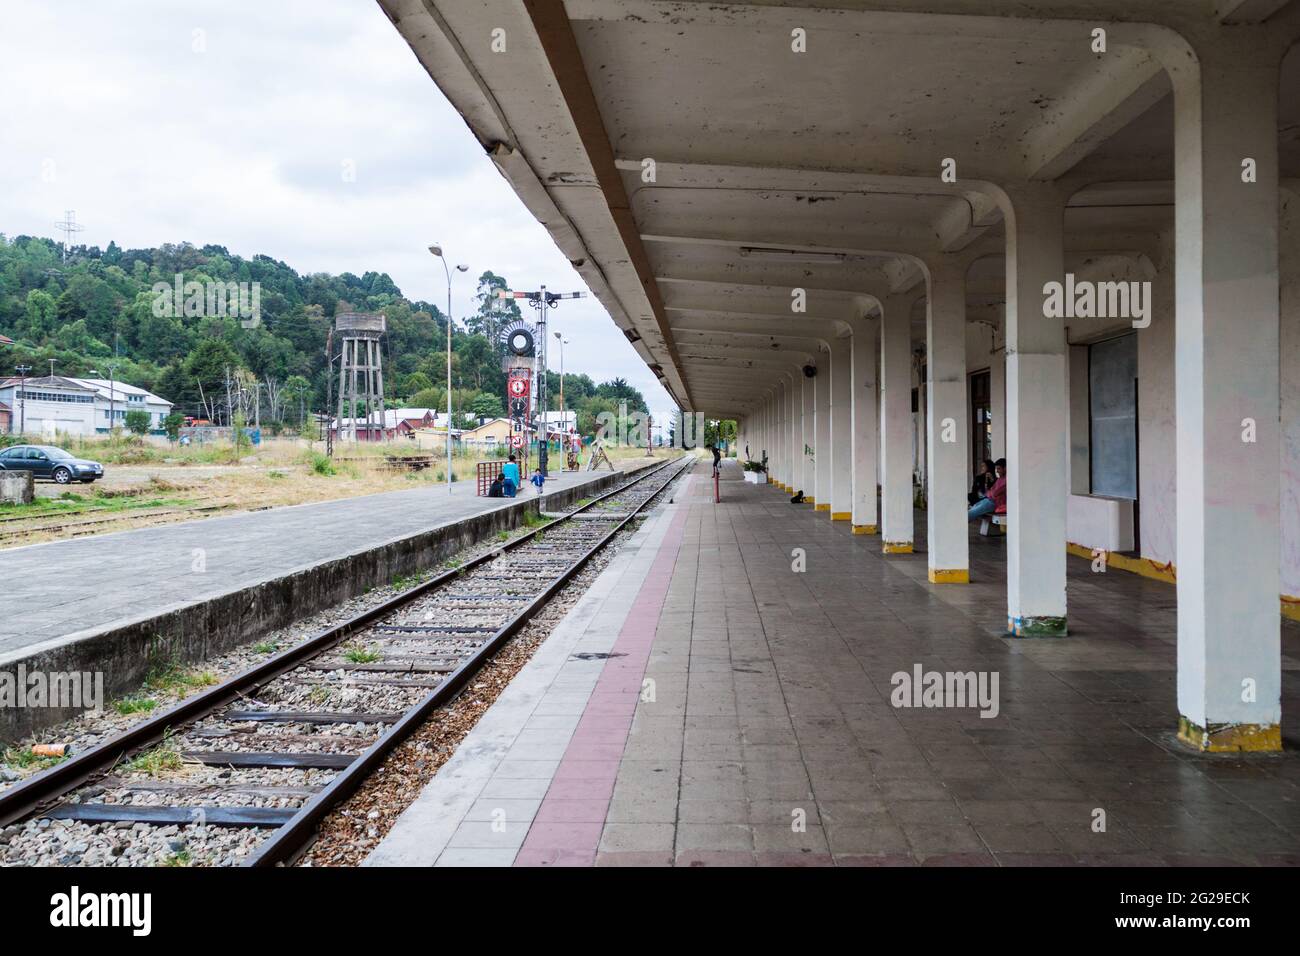 PUERTO VARAS, CHILE - MAR 1, 2015: Antigua estación de tren en Puerto Varas, Chile Foto de stock